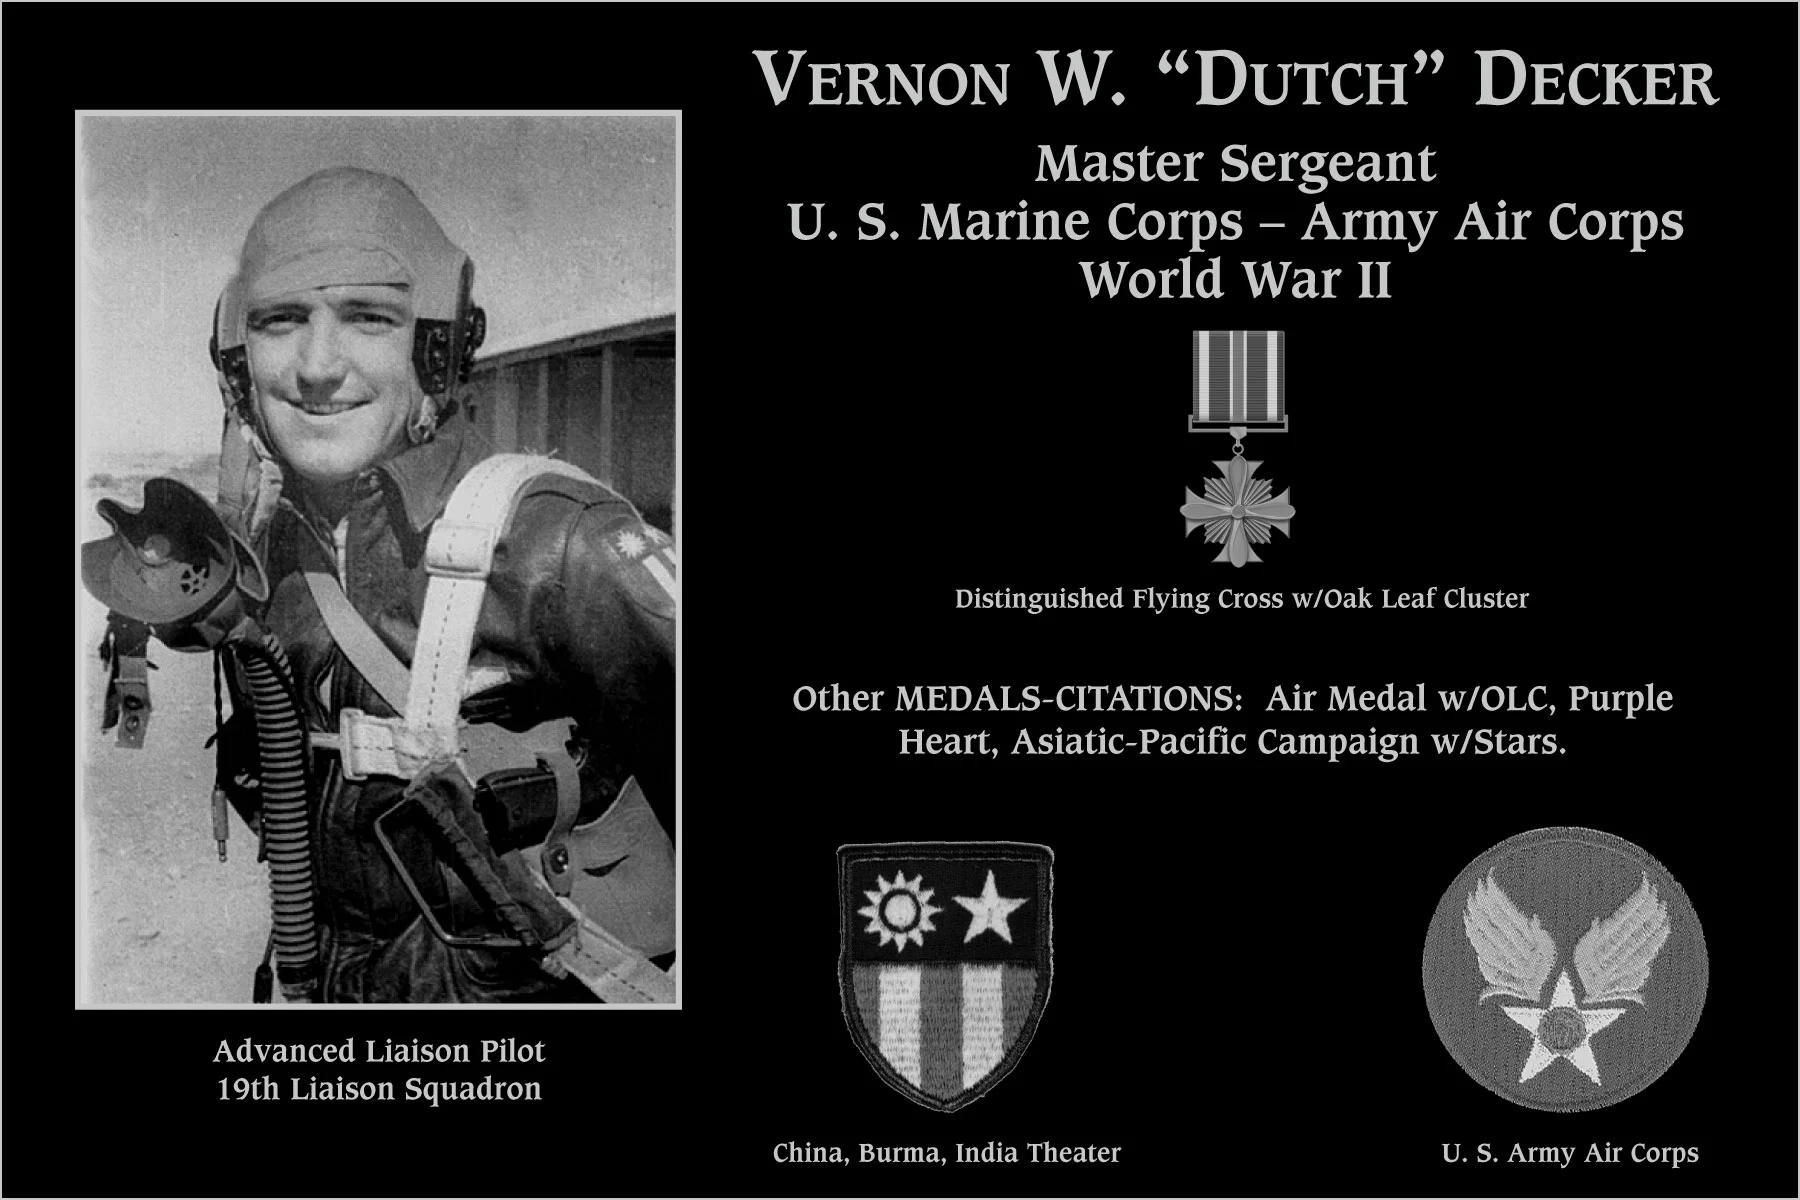 Vernon W “Dutch” Decker